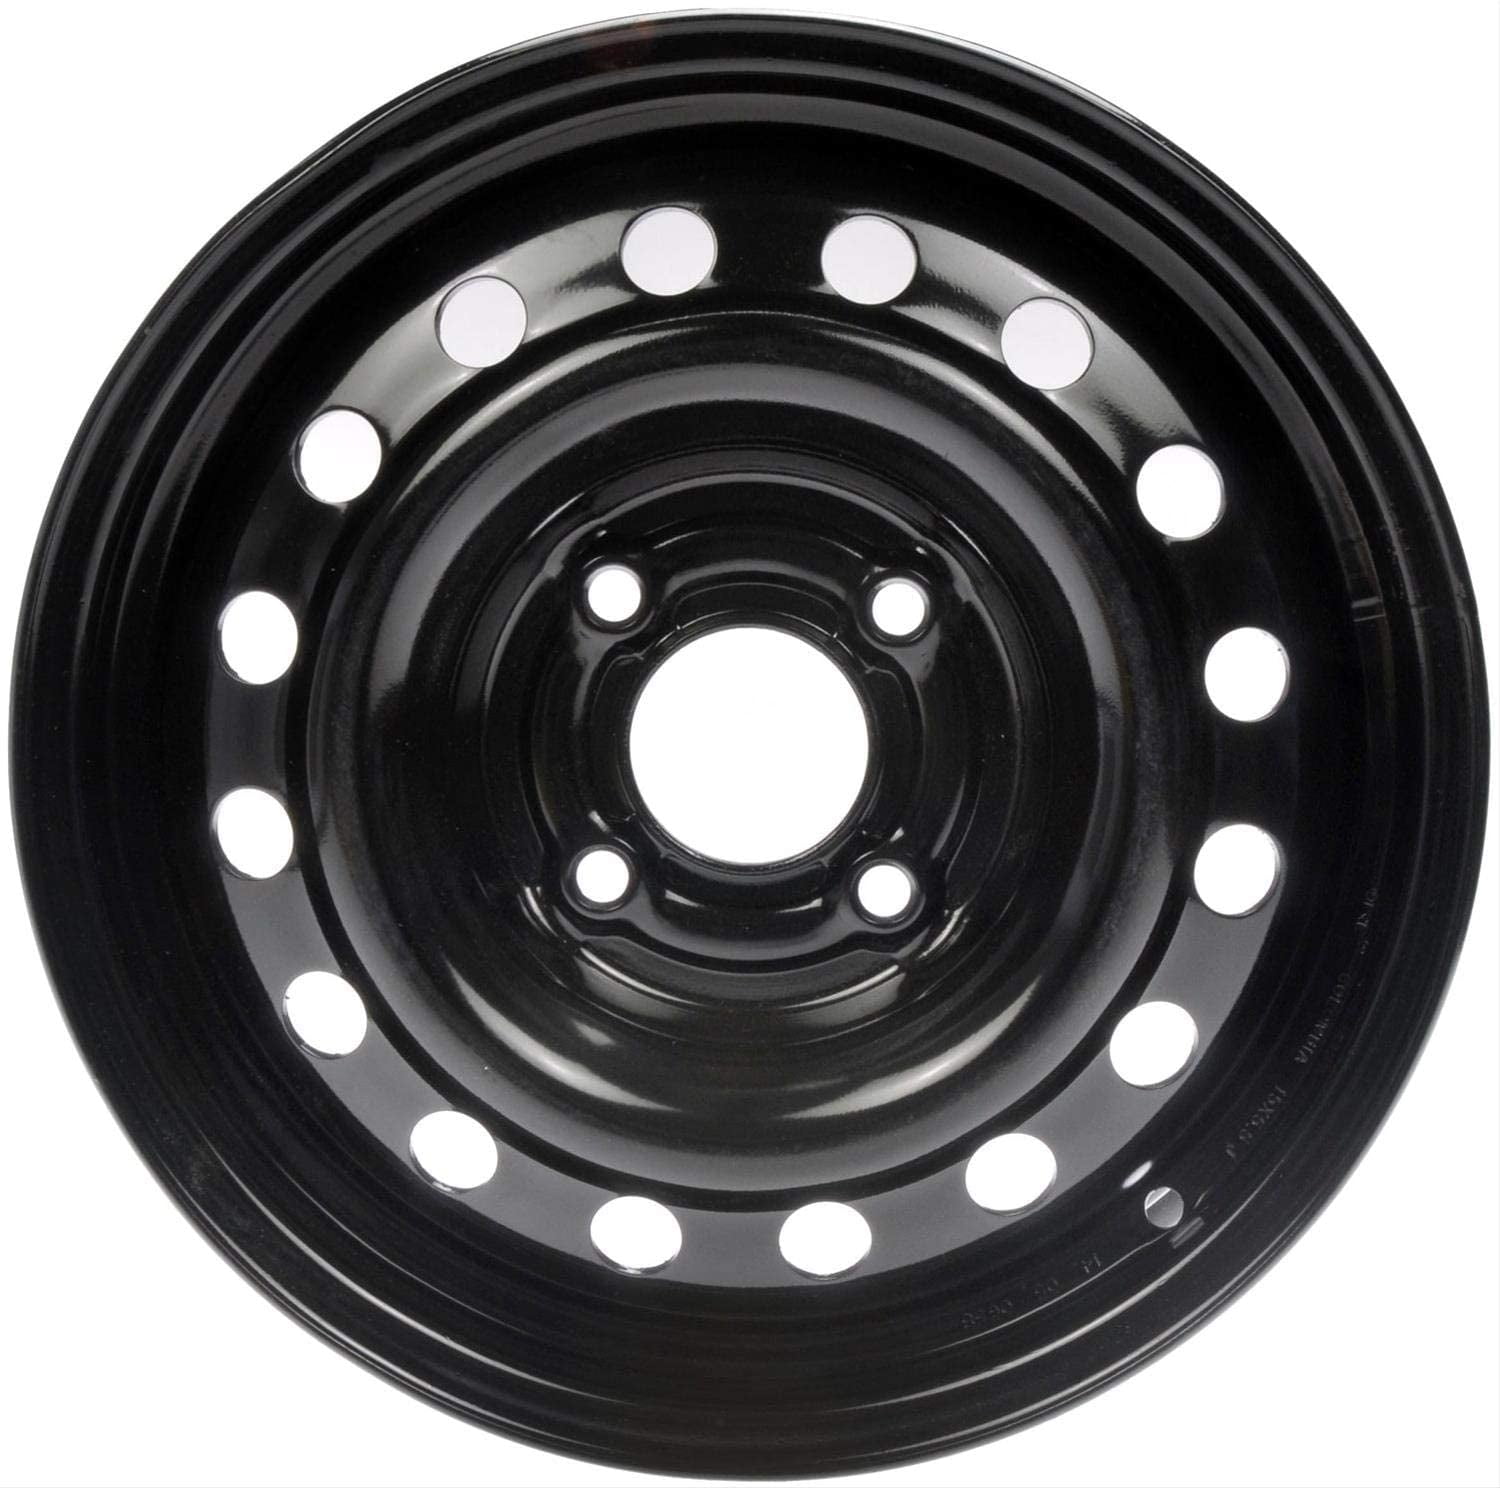 New Steel Wheel Rim 15 inch for 0406 Hyundai Elantra 4 Lug Black